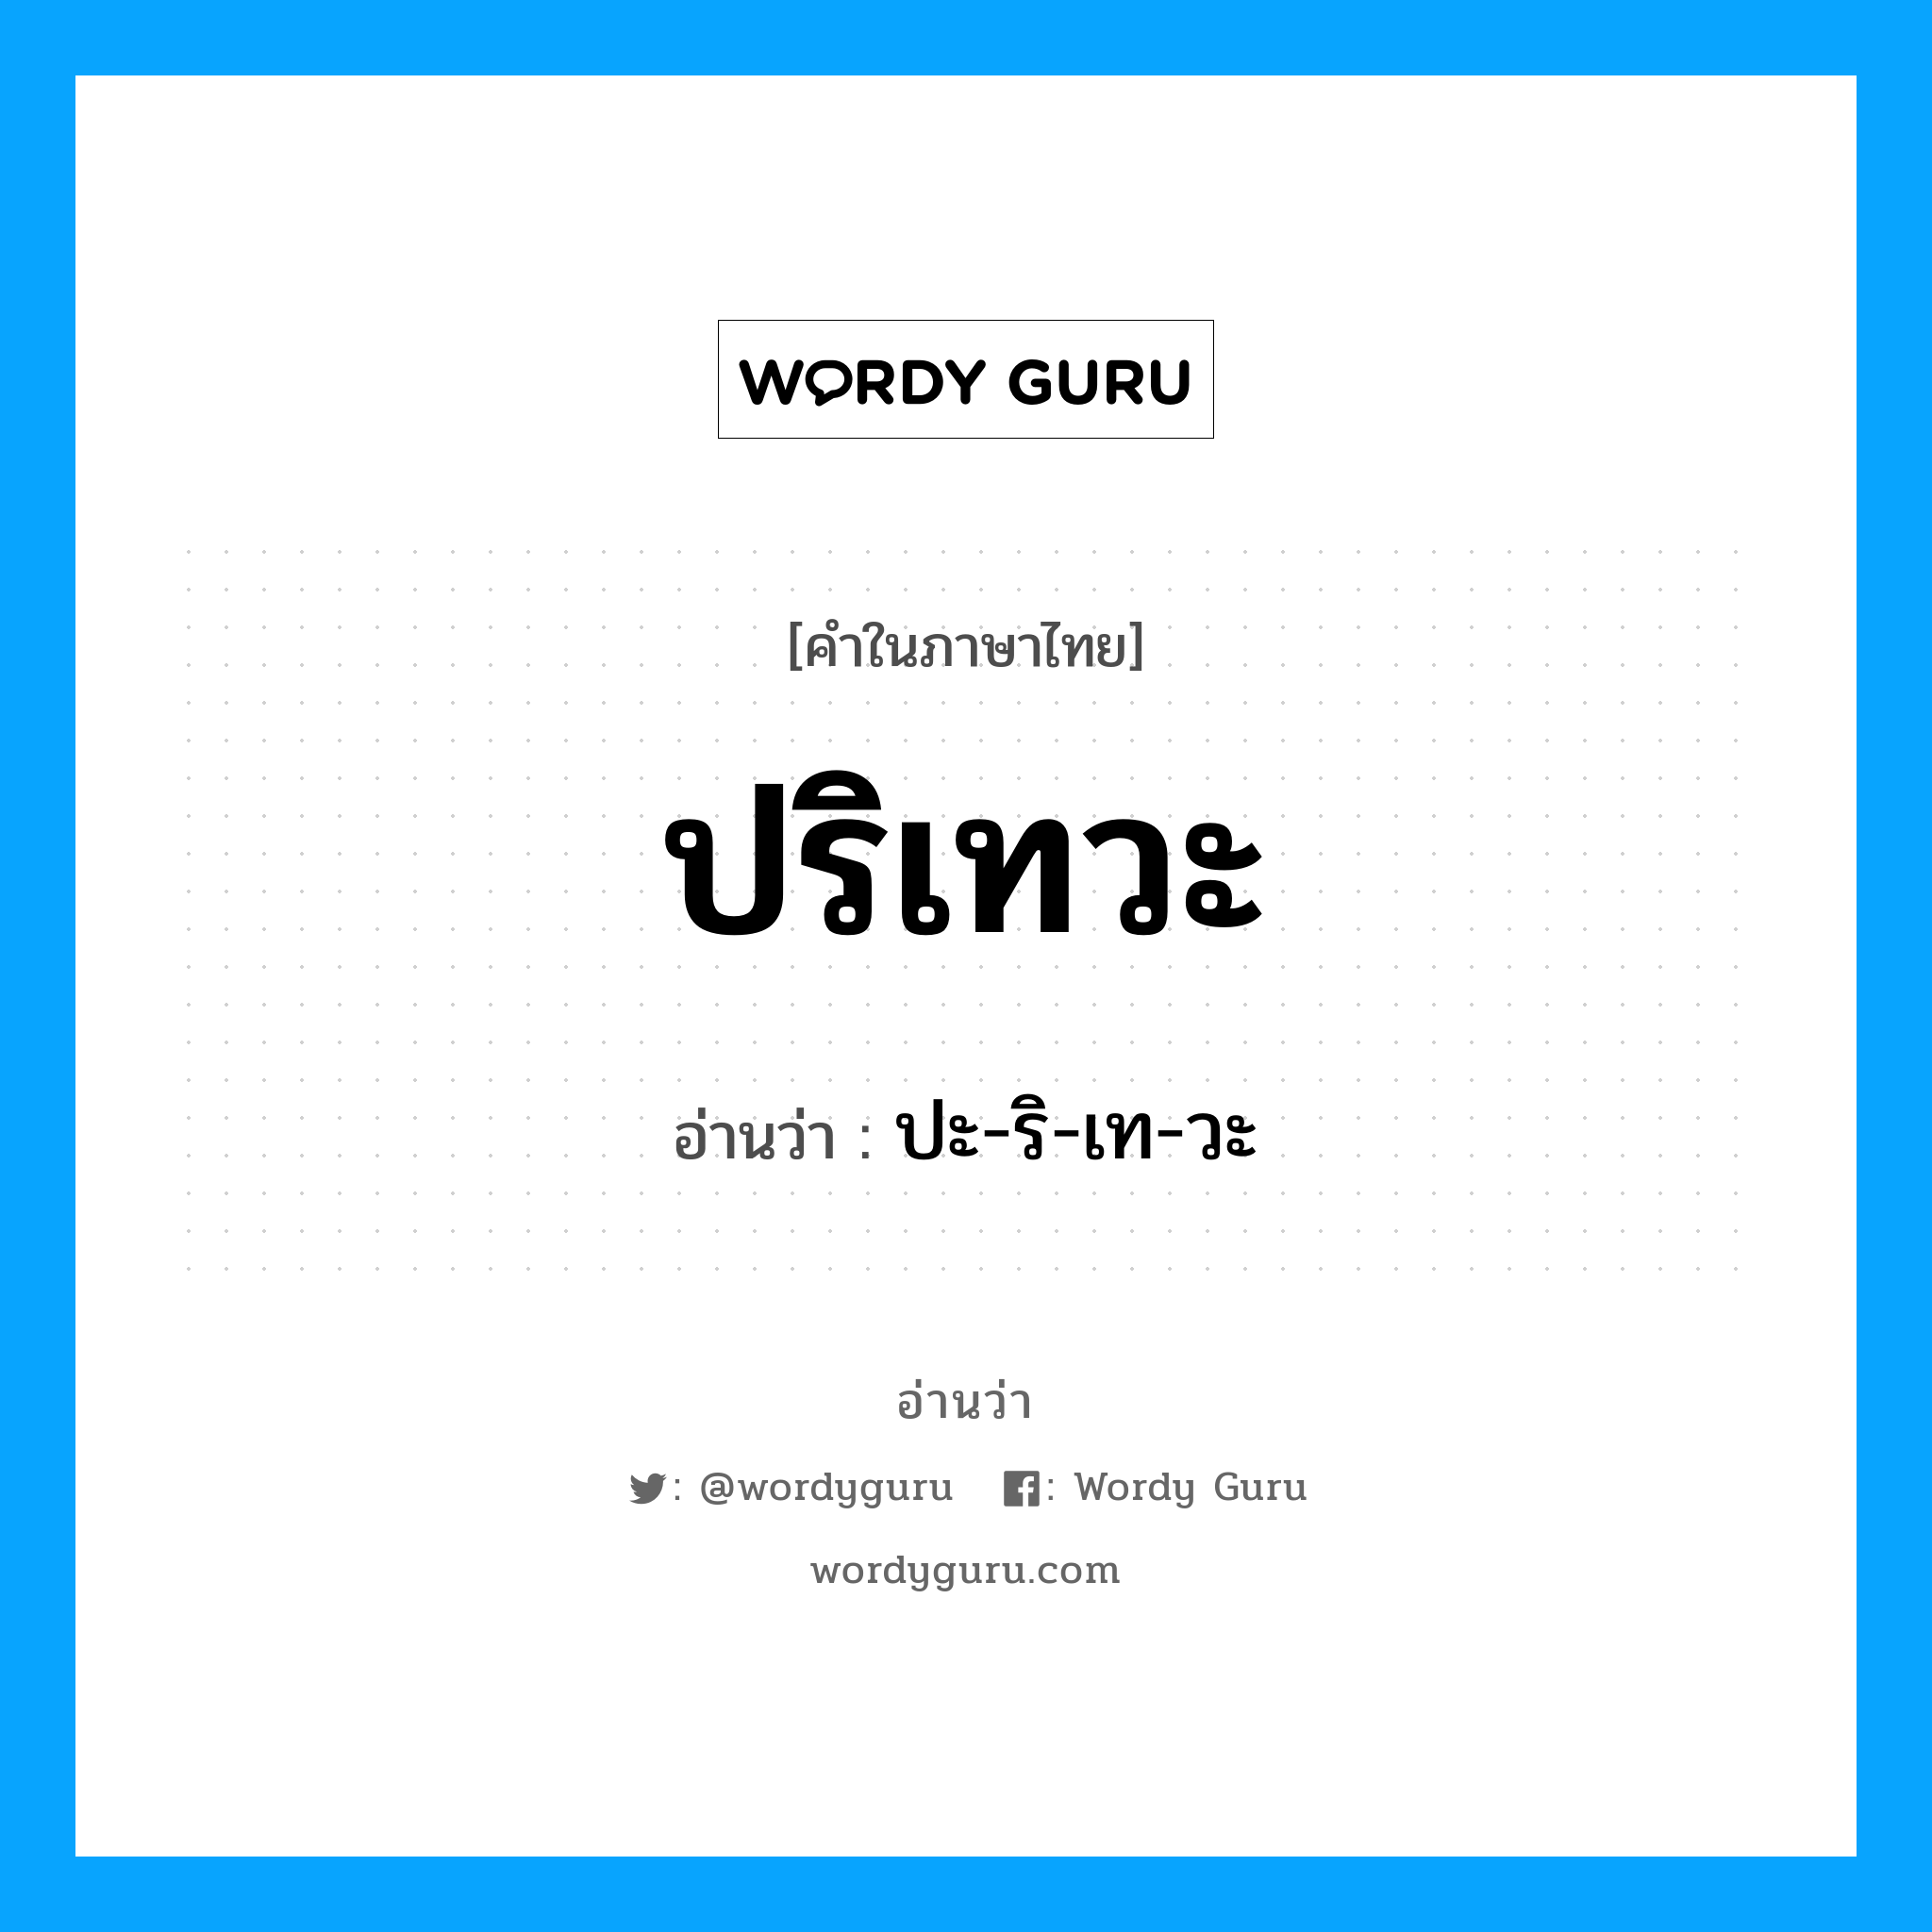 ปะ-ริ-เท-วะ เป็นคำอ่านของคำไหน?, คำในภาษาไทย ปะ-ริ-เท-วะ อ่านว่า ปริเทวะ